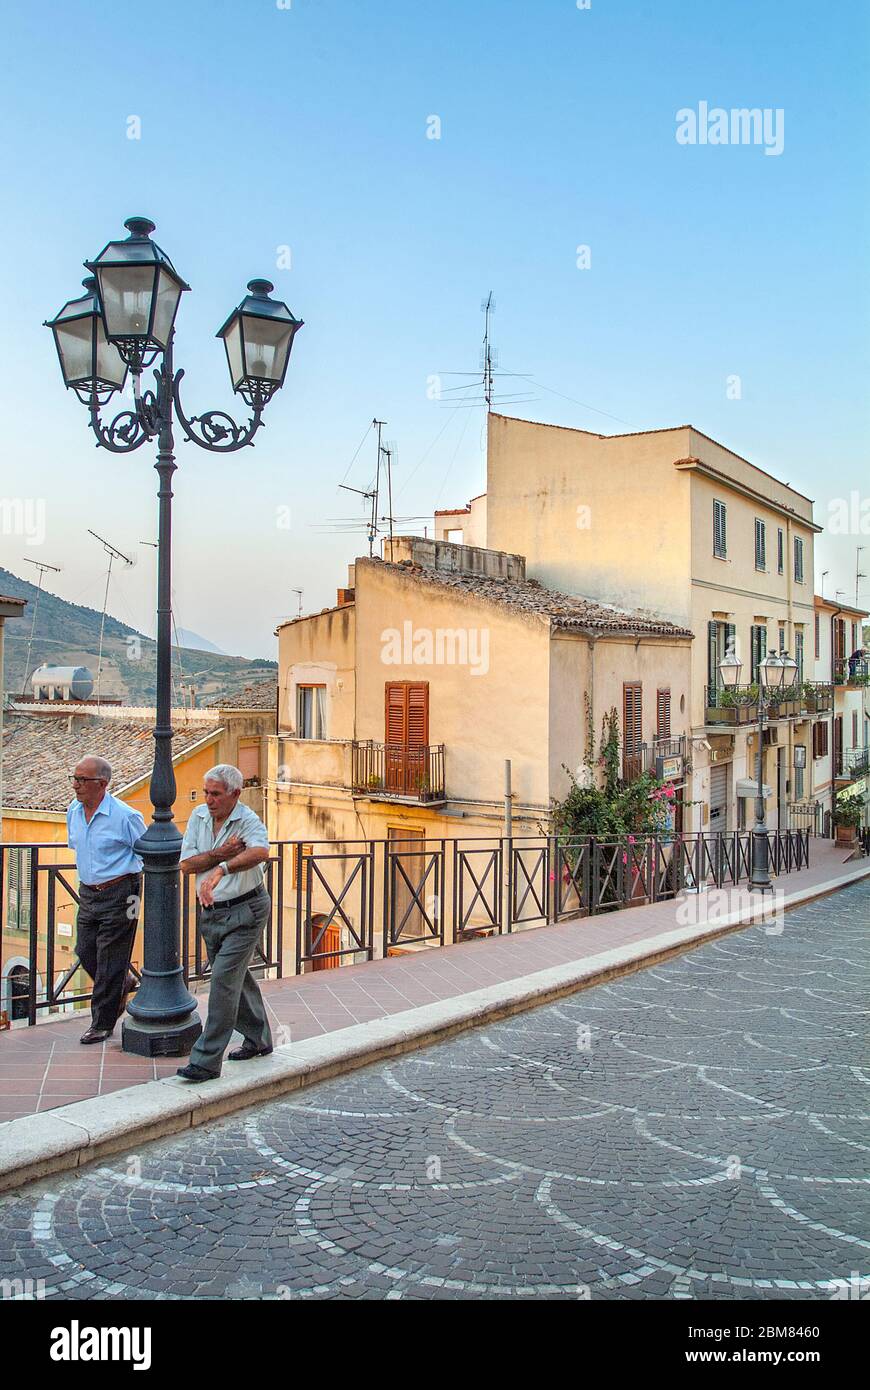 Street scene in Comune of Alia, Sicily, Italy Stock Photo